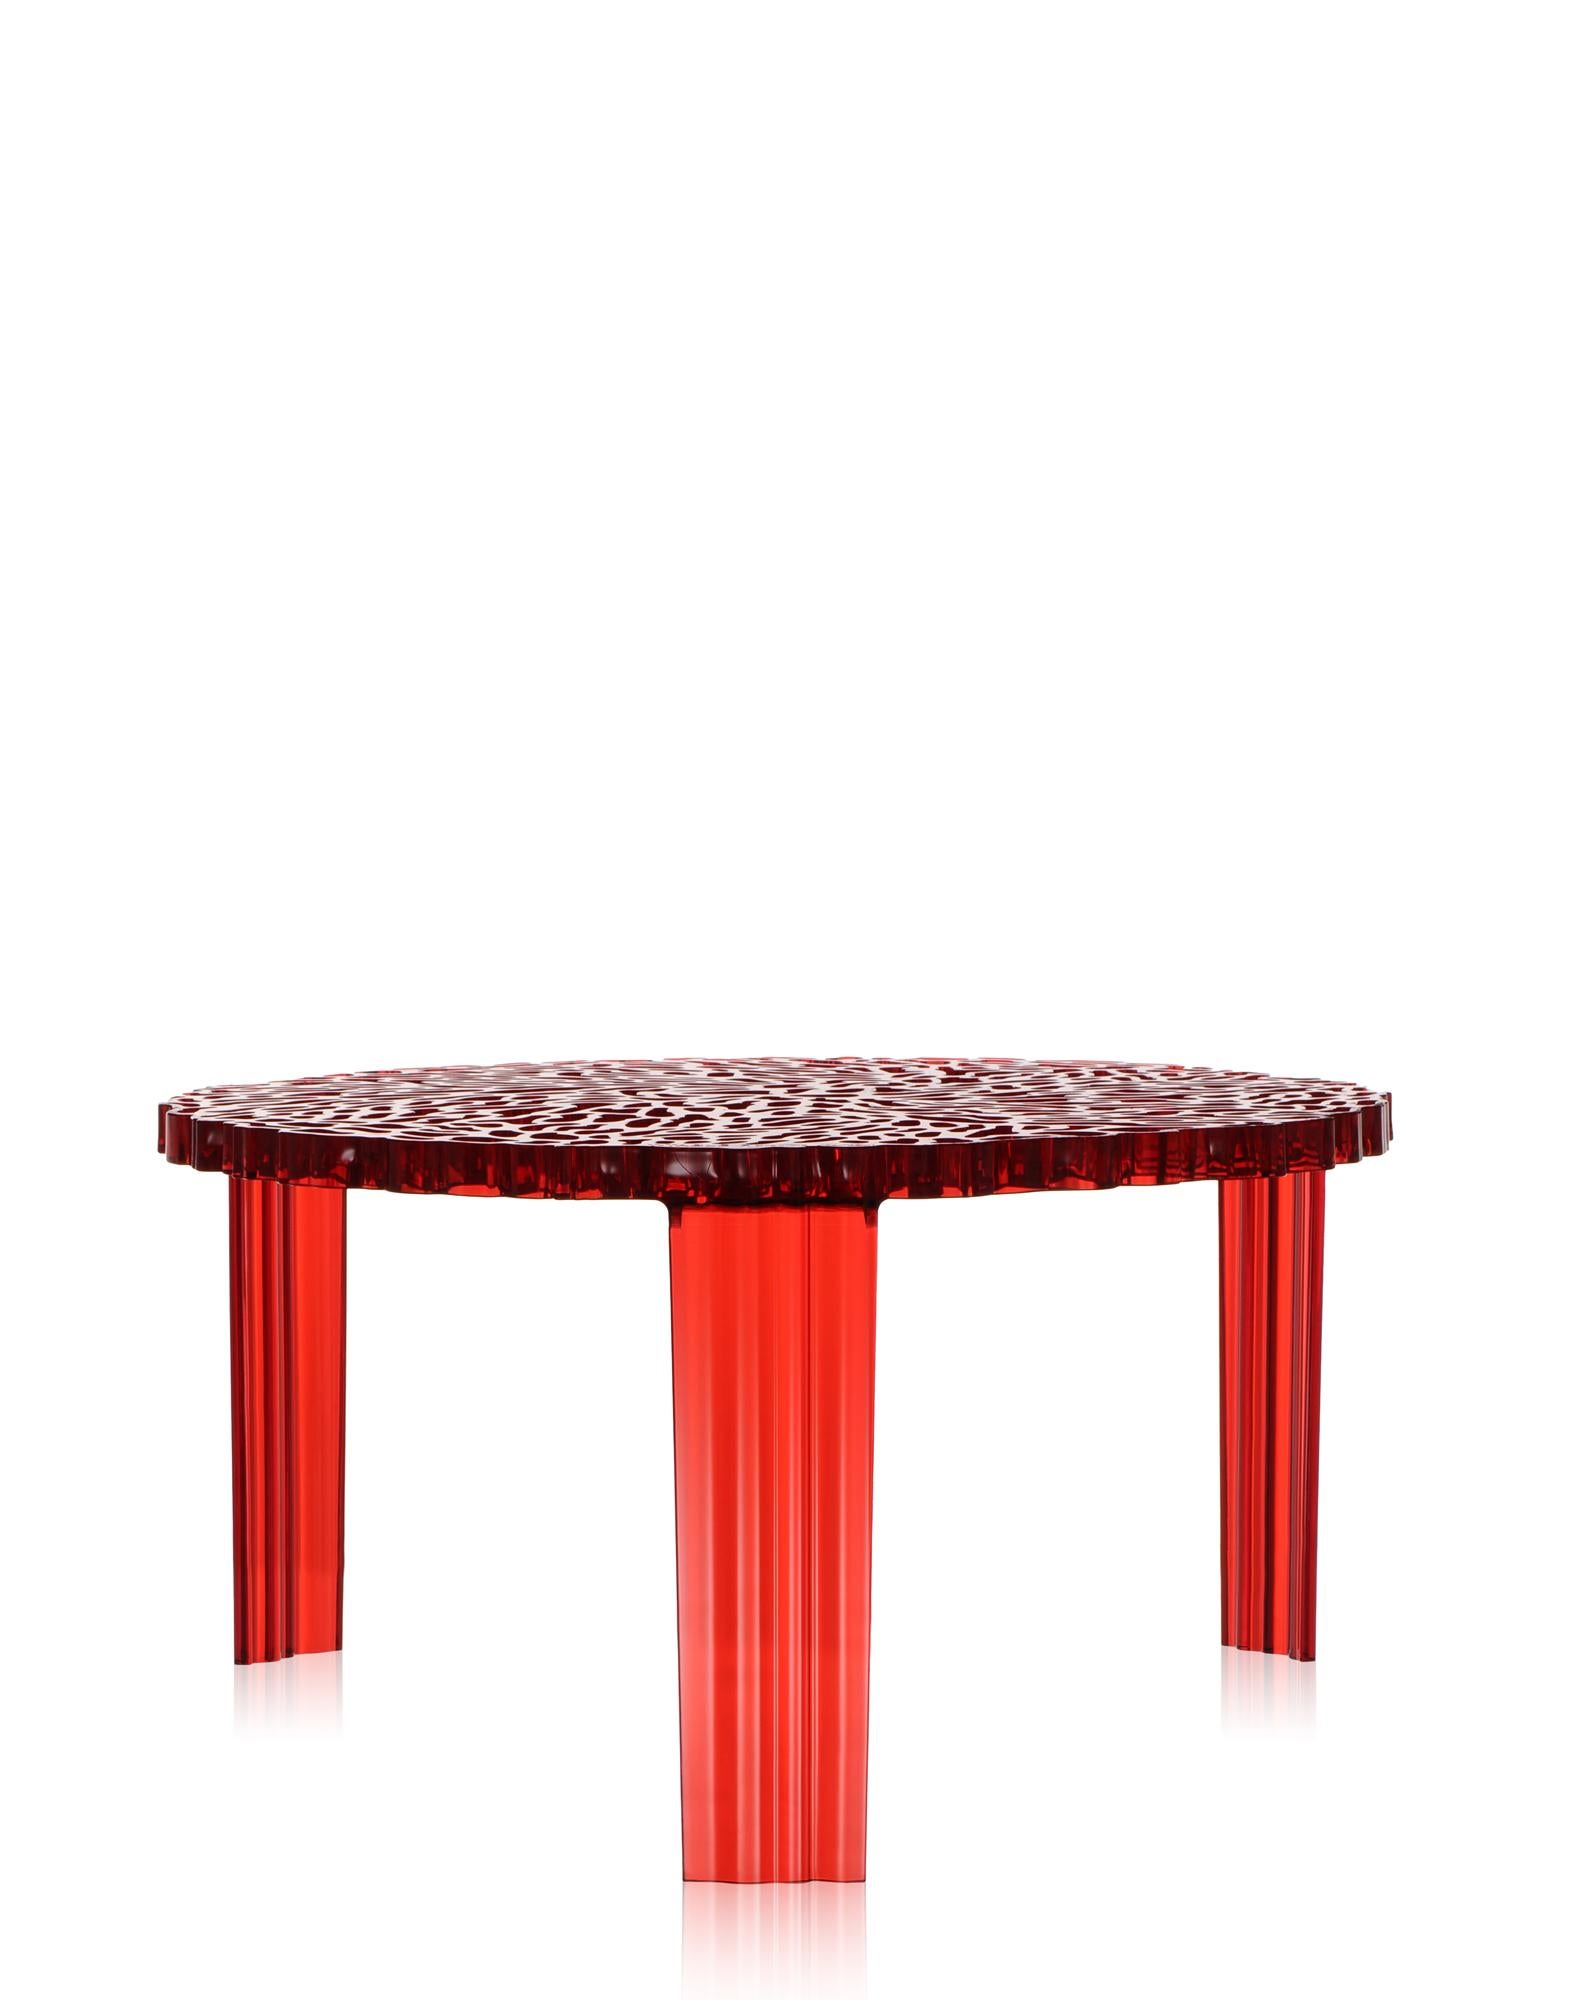 Une gamme de tables en trois hauteurs. La surface du plateau de la table T alterne plénitude et espace pour créer un effet élégant et précieux qui rappelle la broderie.

Il existe en 3 hauteurs différentes.